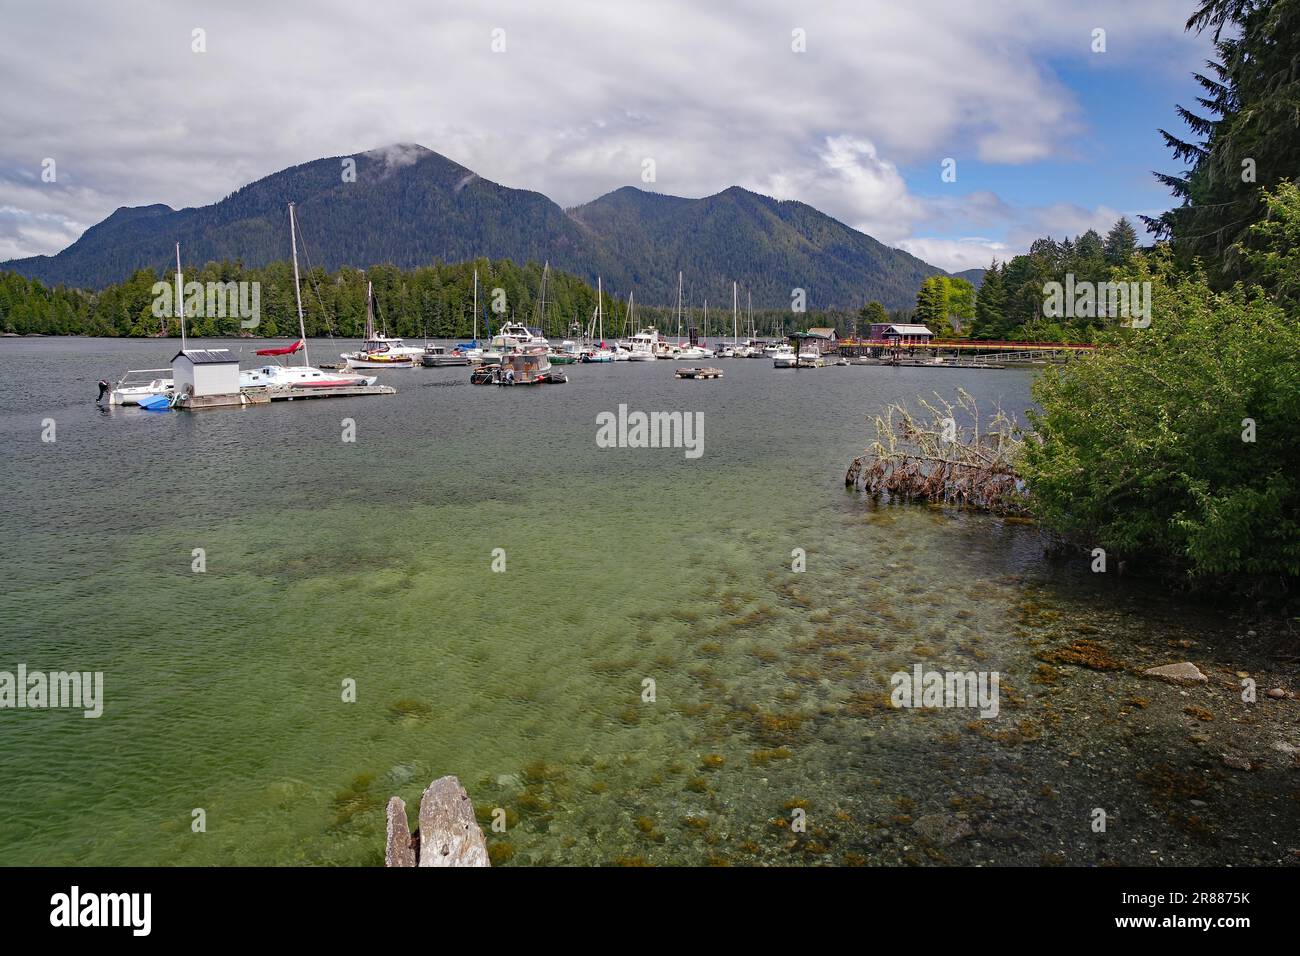 Eau transparente dans une baie avec de petits bateaux de plaisance, Tofino, forêt vierge, parc national, océan Pacifique, Île de Vancouver, Grande-Bretagne Banque D'Images